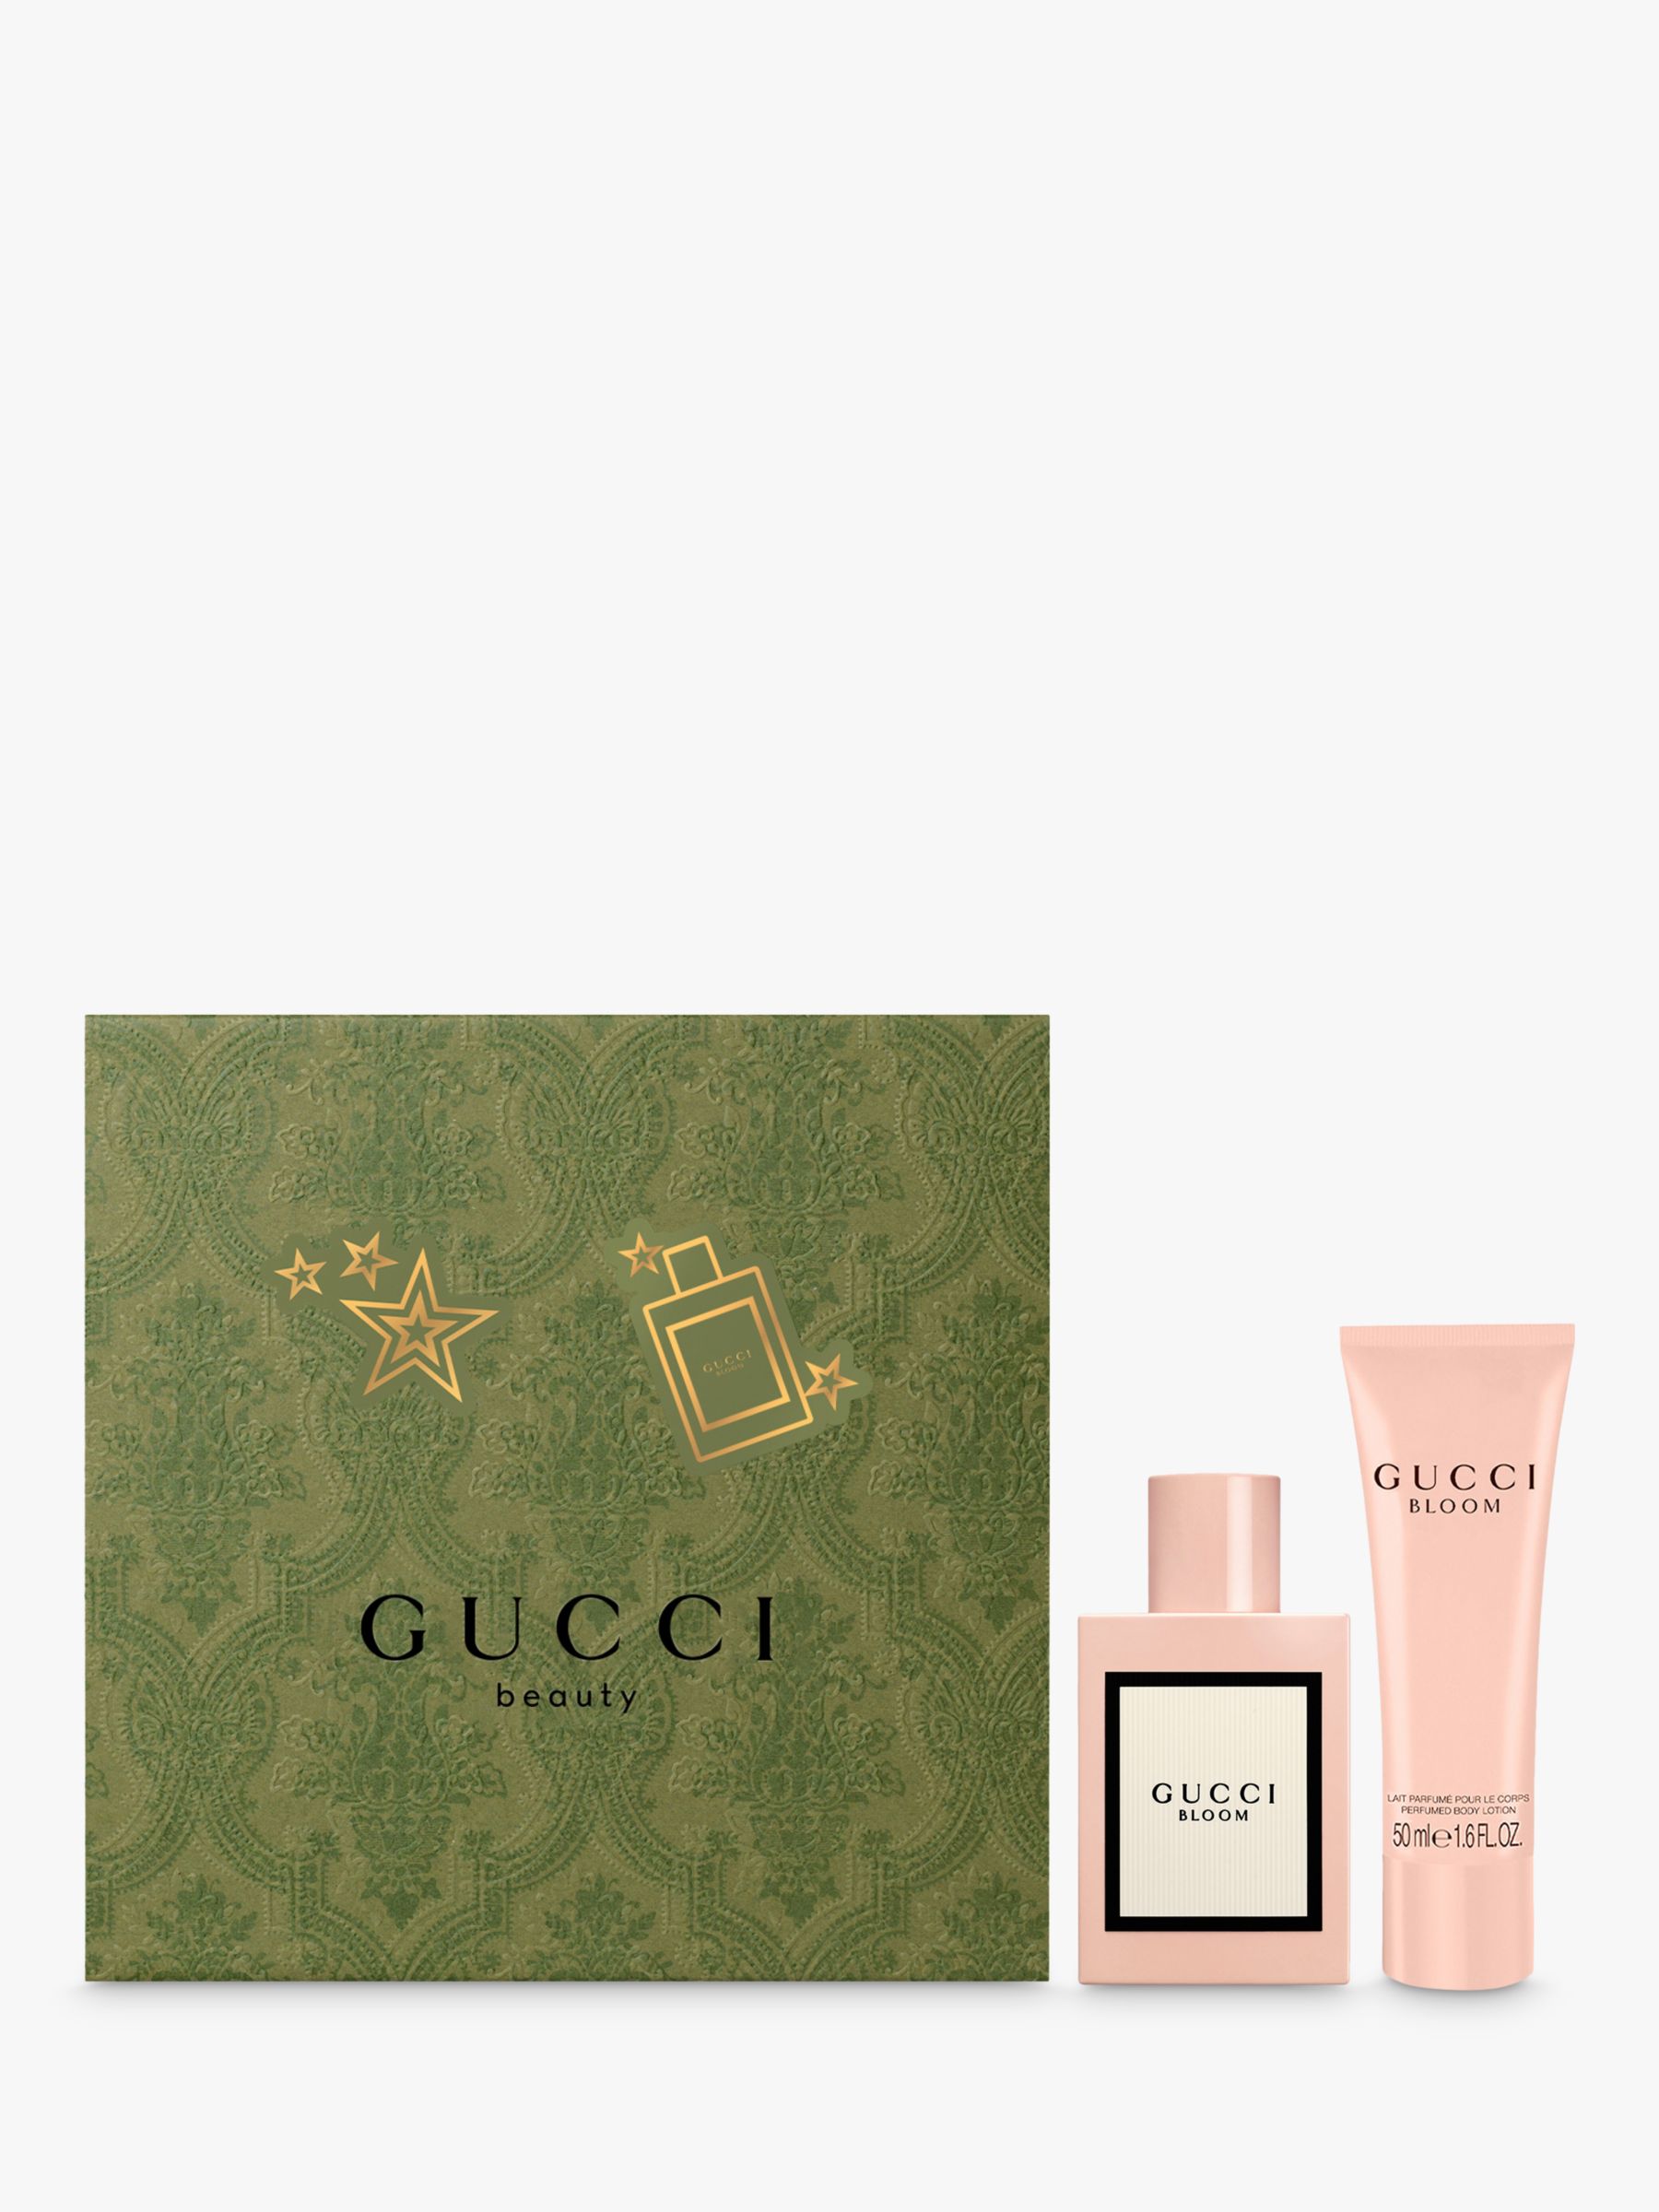 Gucci Bloom Eau de Parfum 50ml Fragrance Gift Set